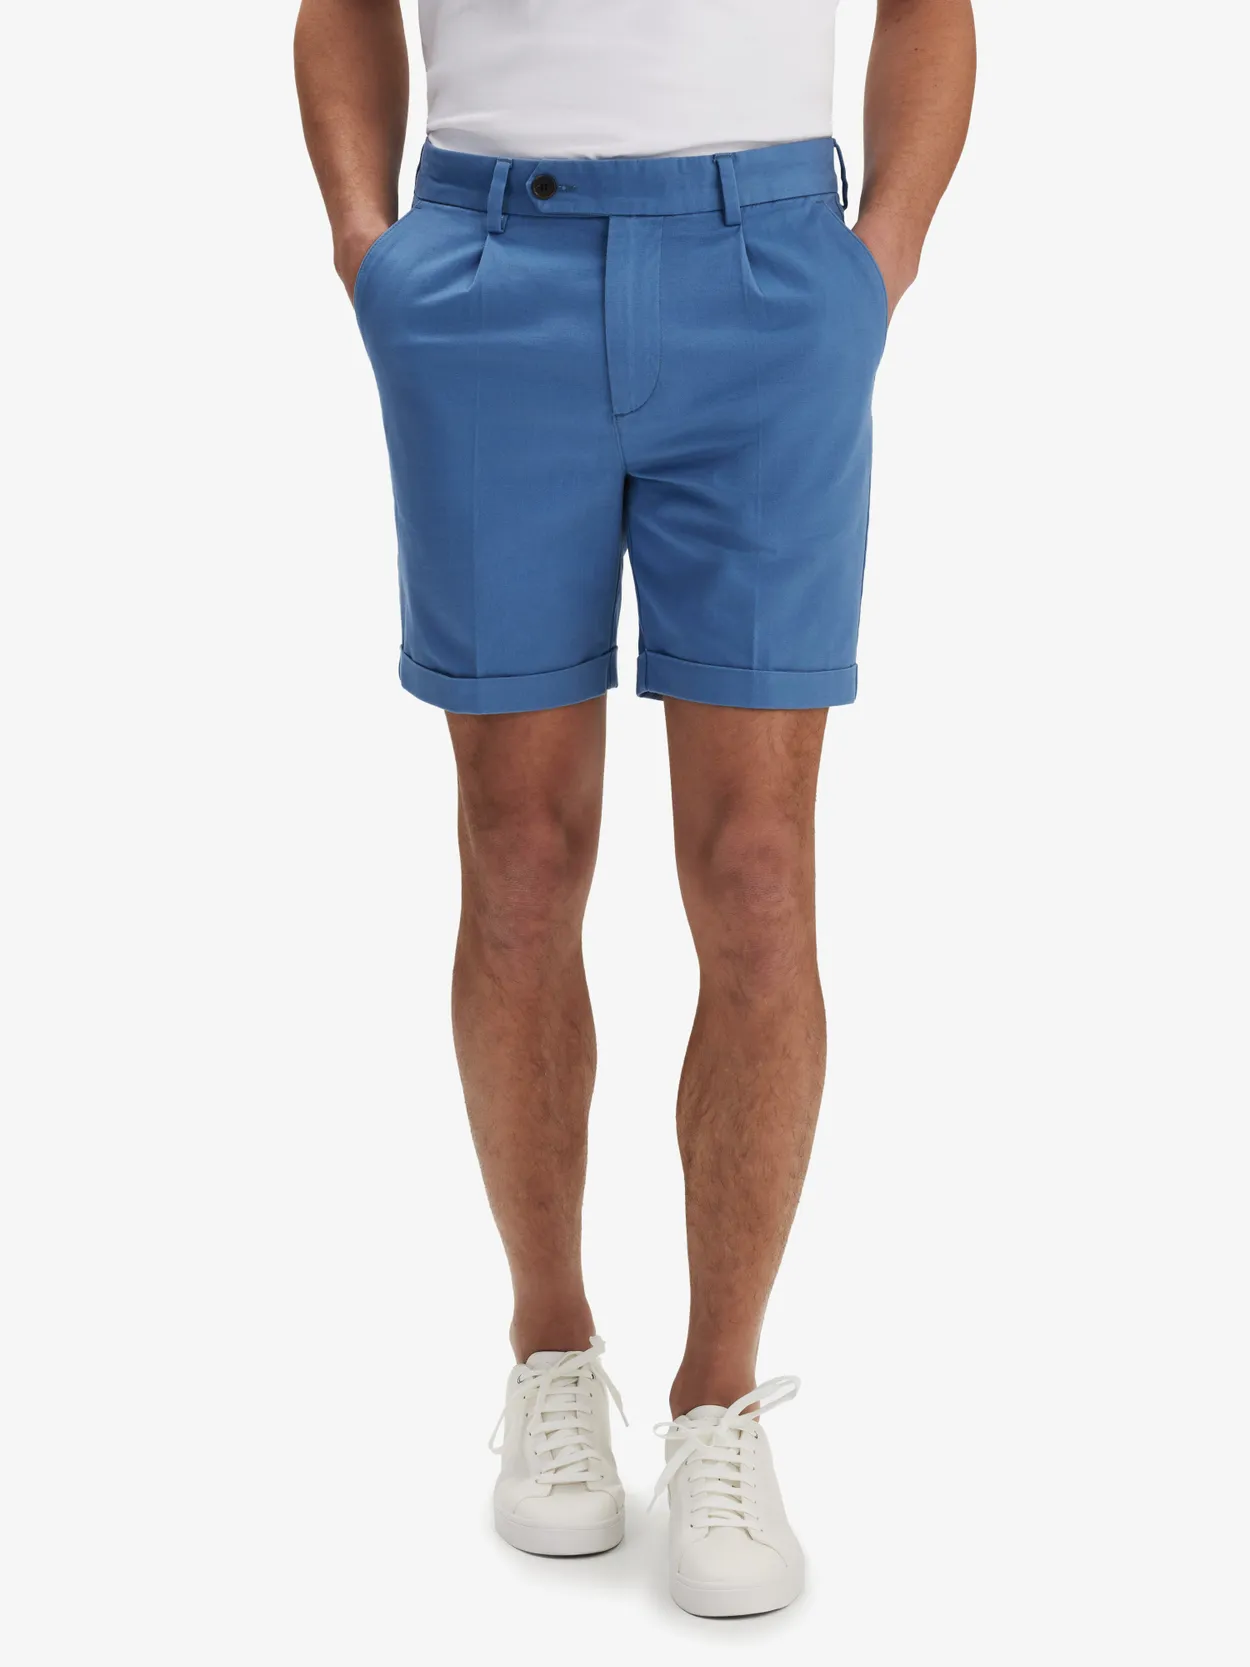 Blue Chinos Shorts